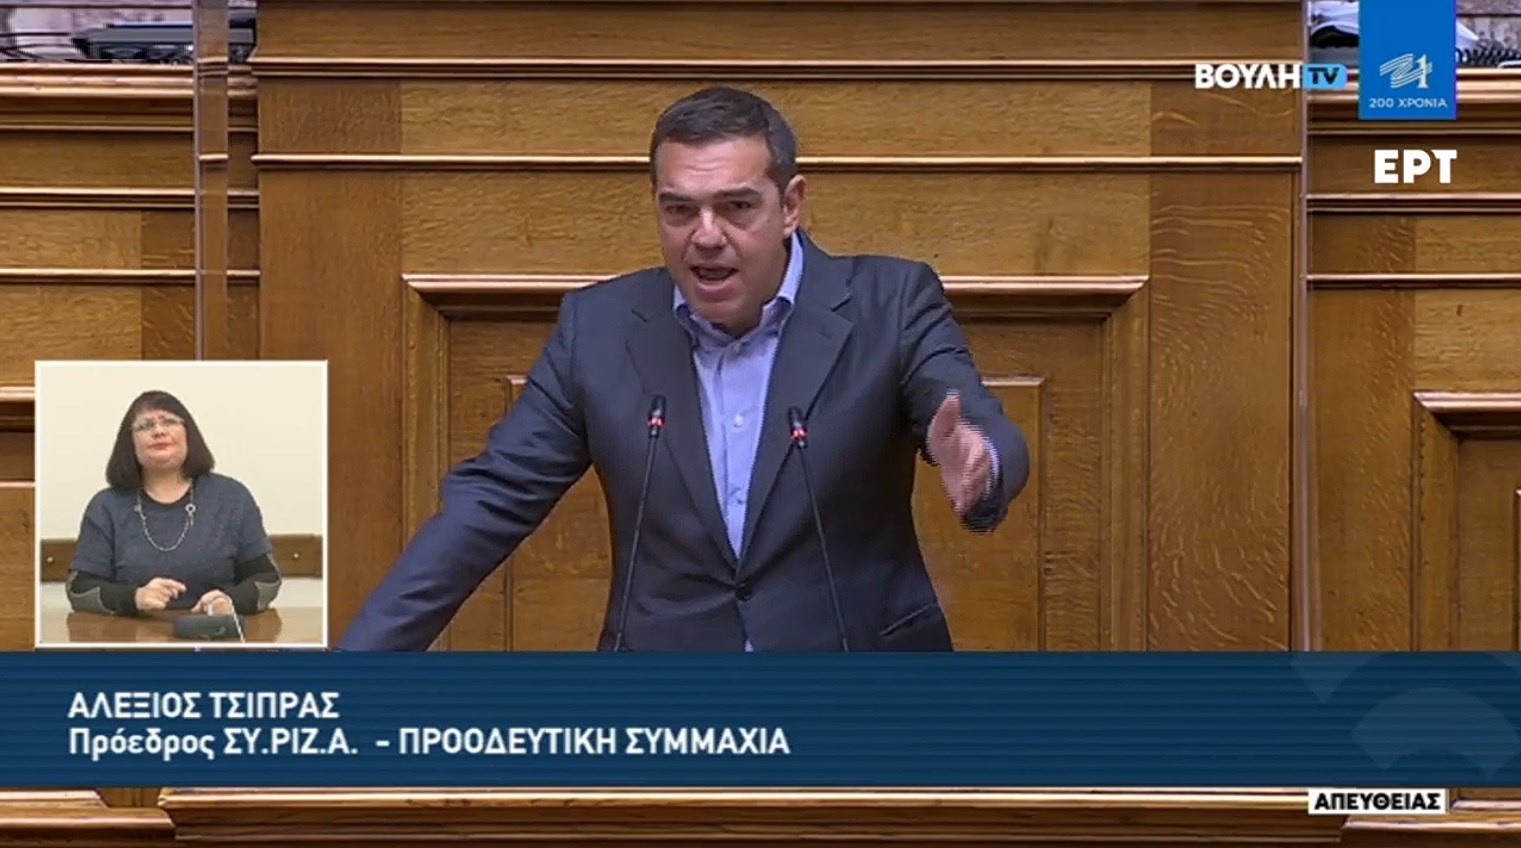 Αλέξης Τσίπρας Βουλή: Μην είστε αλαζόνας με 15.000 νεκρούς - Εκμεταλλευθήκατε την πανδημία για να στήσετε καθεστώς